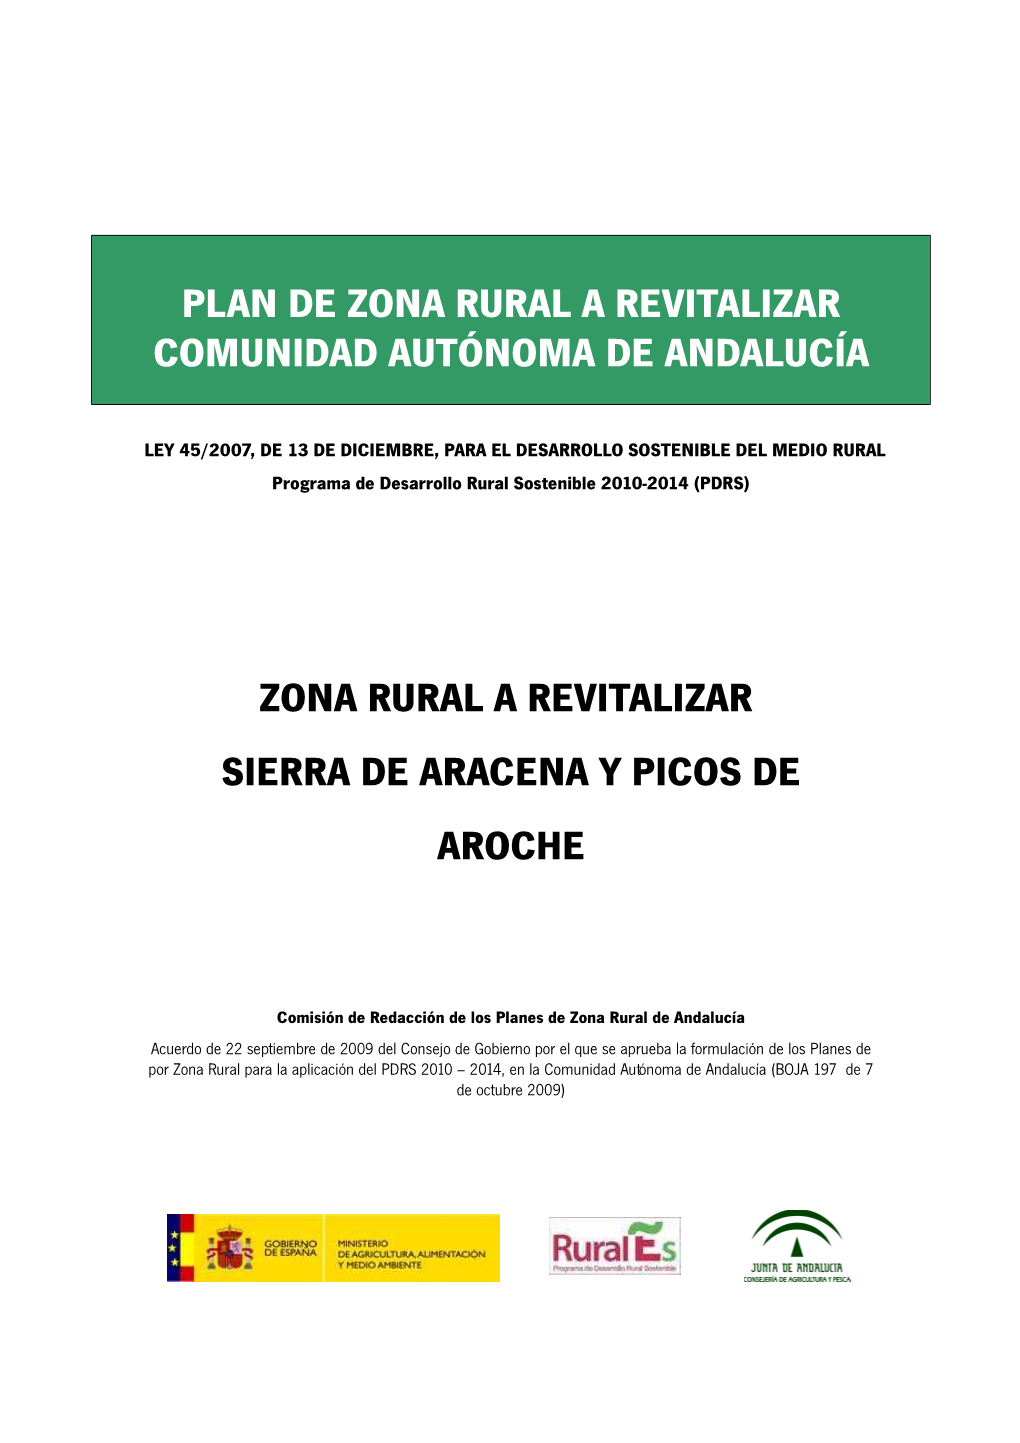 Zona Rural a Revitalizar Sierra De Aracena Y Picos De Aroche